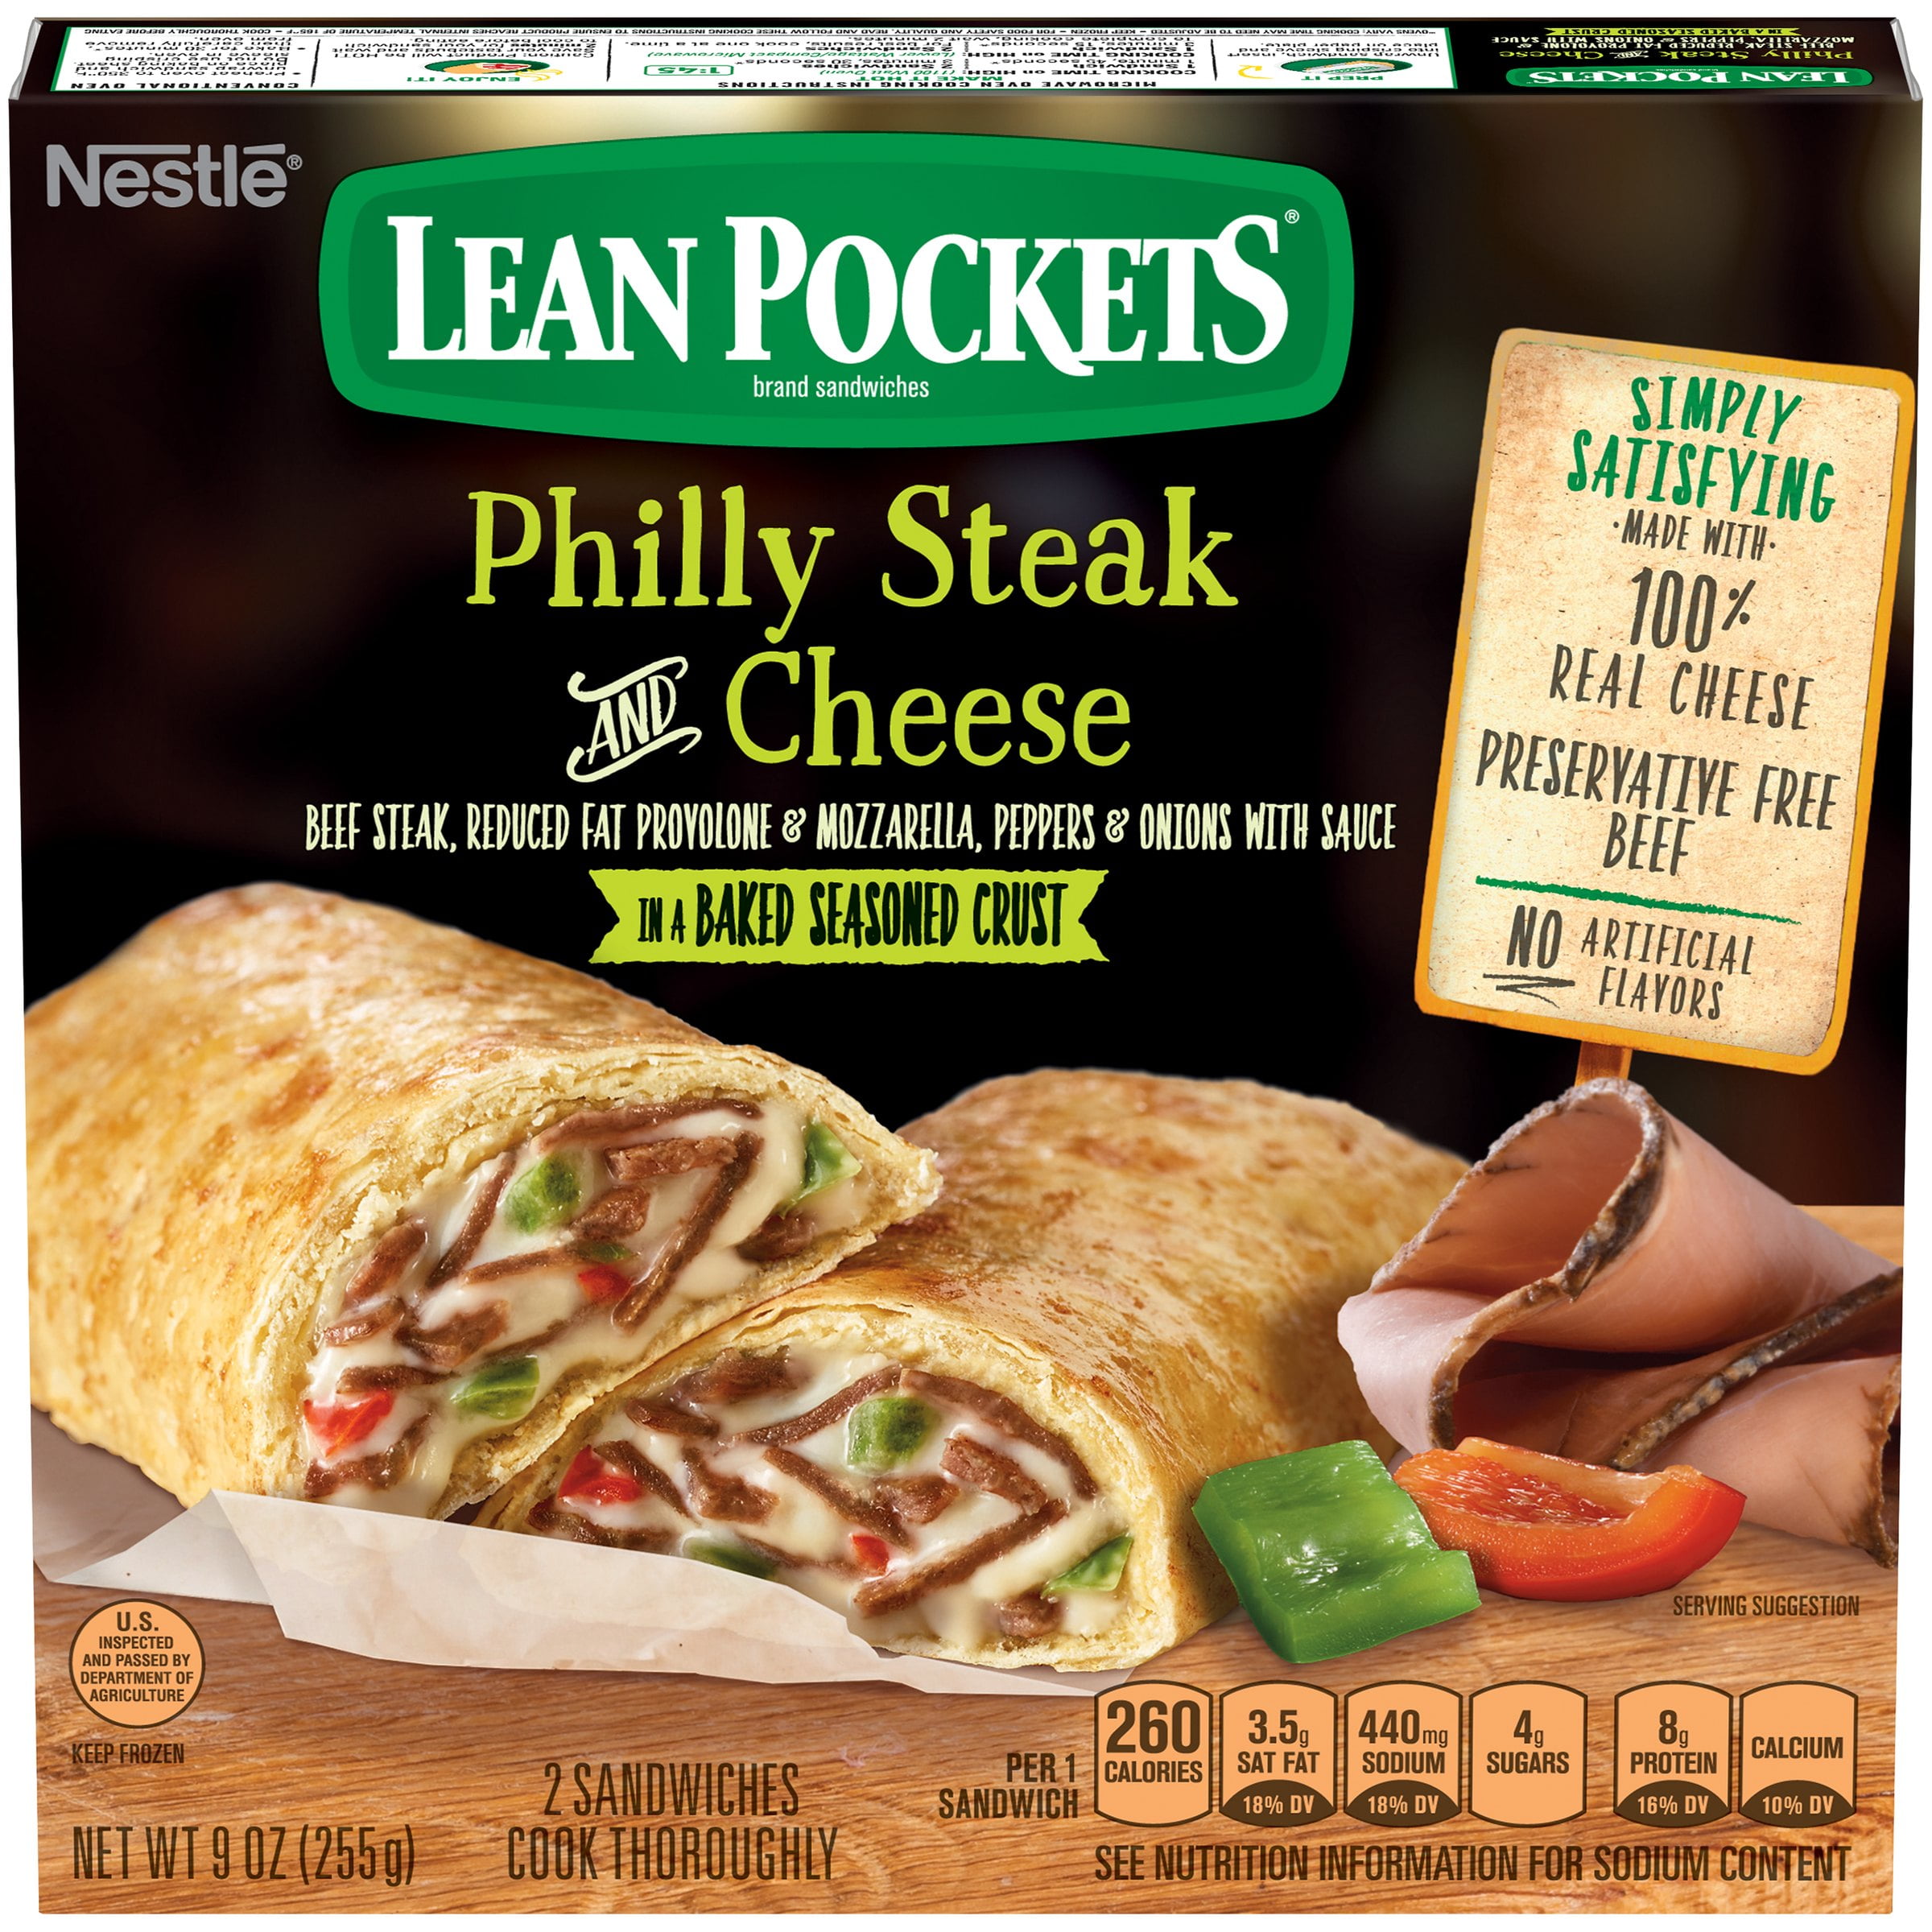 LEAN POCKETS Philly Steak & Cheese Frozen Sandwiches 2 ct Box - Walmart.com